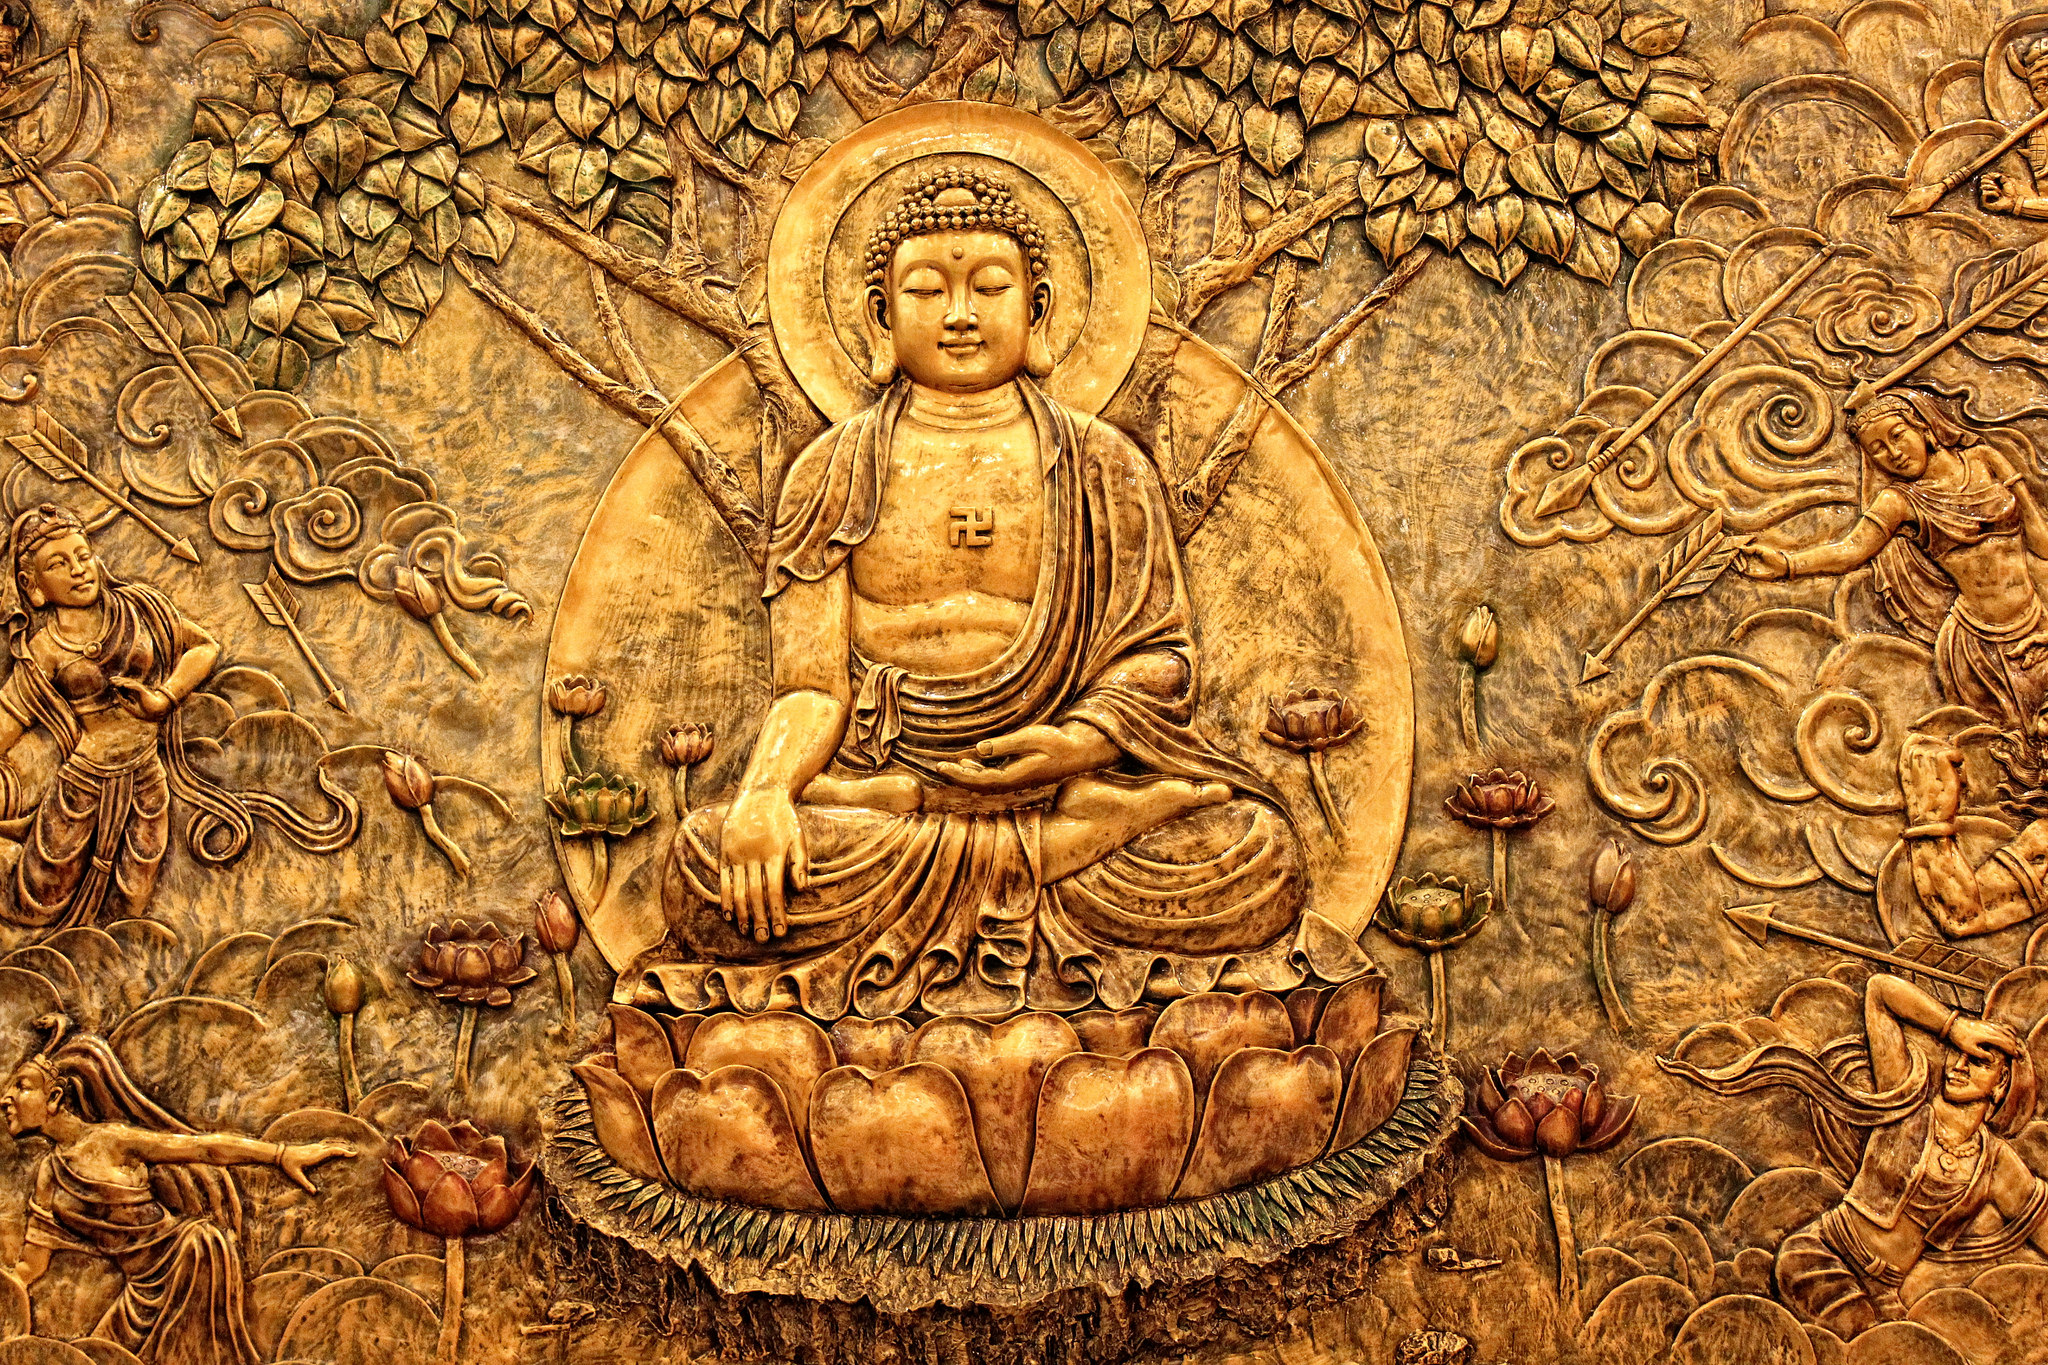 Hình Phật đẹp là những tác phẩm nghệ thuật tuyệt vời, tạo ra từ sự cảm hứng và tâm hồn. Đến với chúng tôi, bạn sẽ được chiêm ngưỡng những bức tranh tuyệt đẹp này.